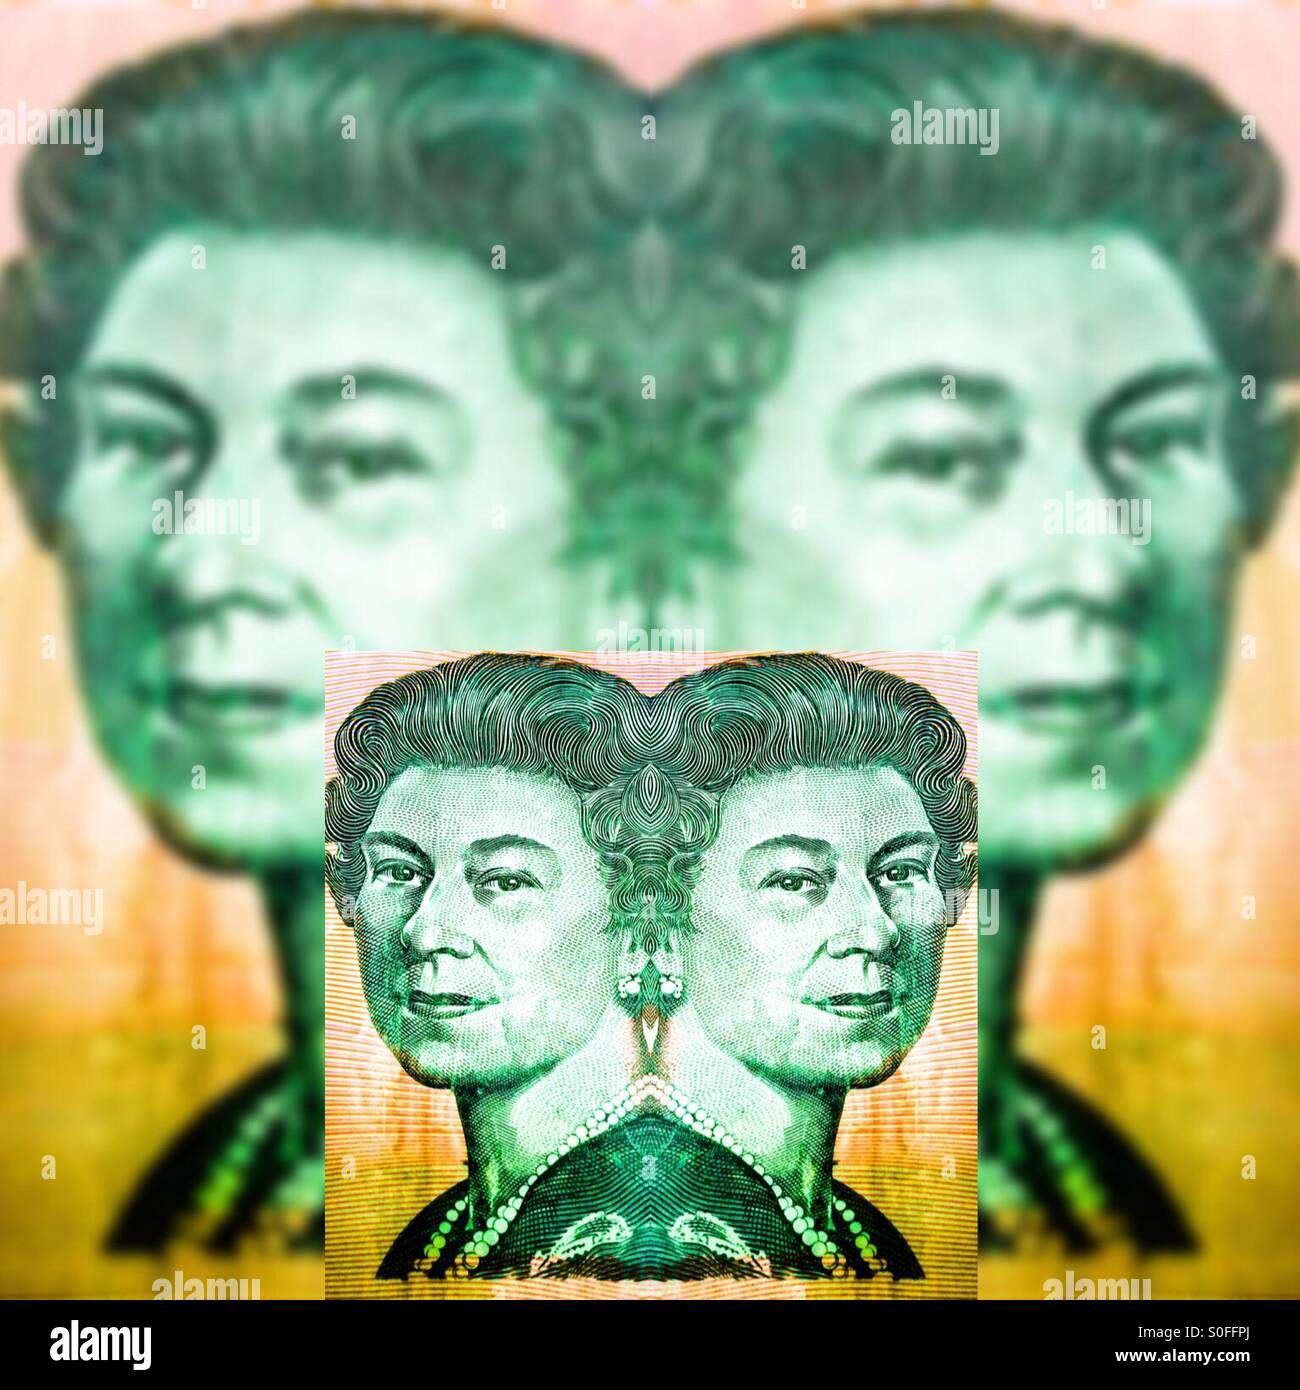 queen-elizabeth-ii-on-australian-currenc